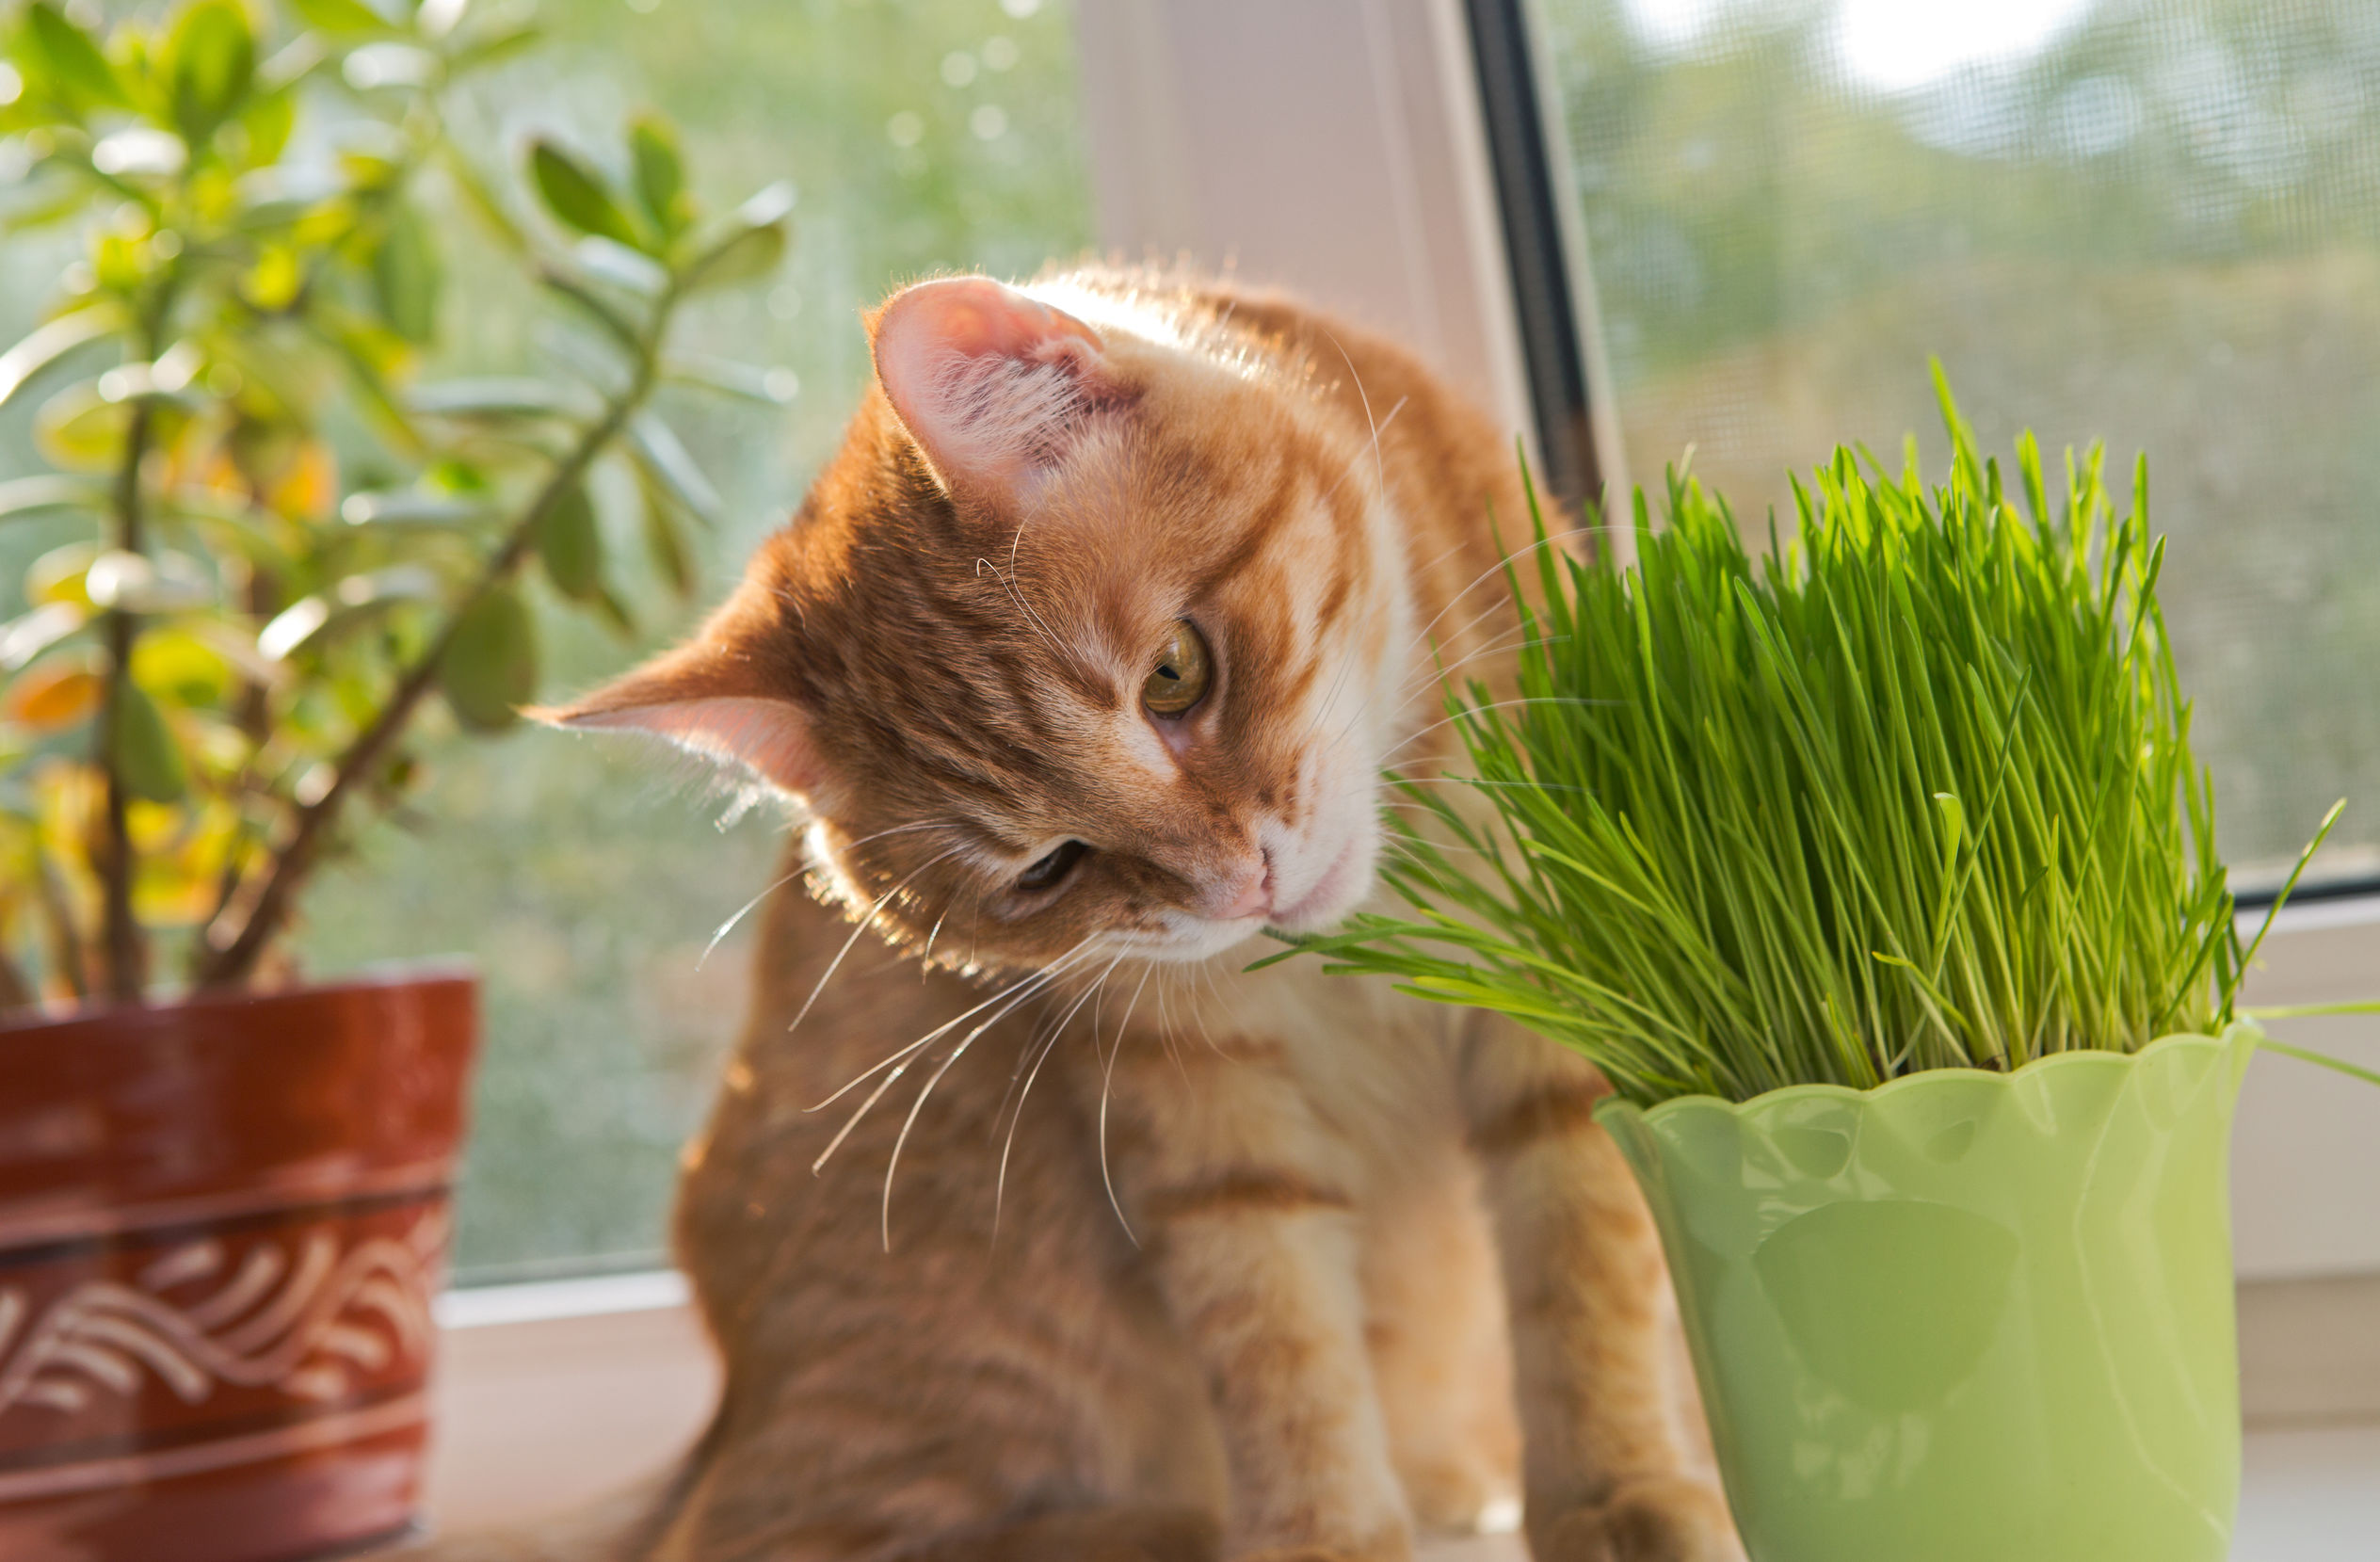 Herbe à chat et Catnip : Bienfaits, utilisation et différences - Polkee